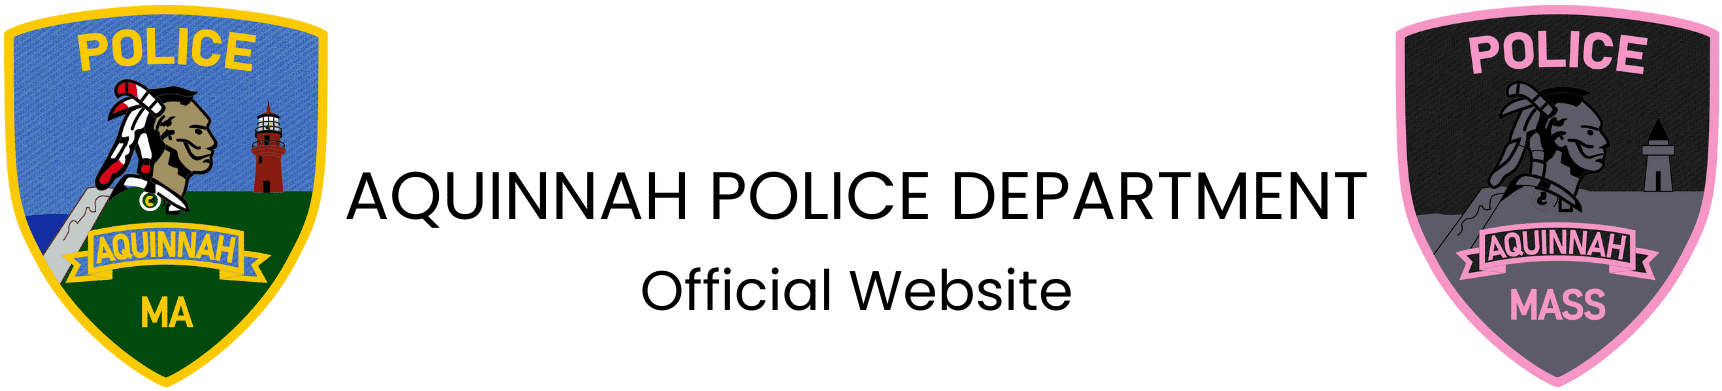 Aquinnah Police Department